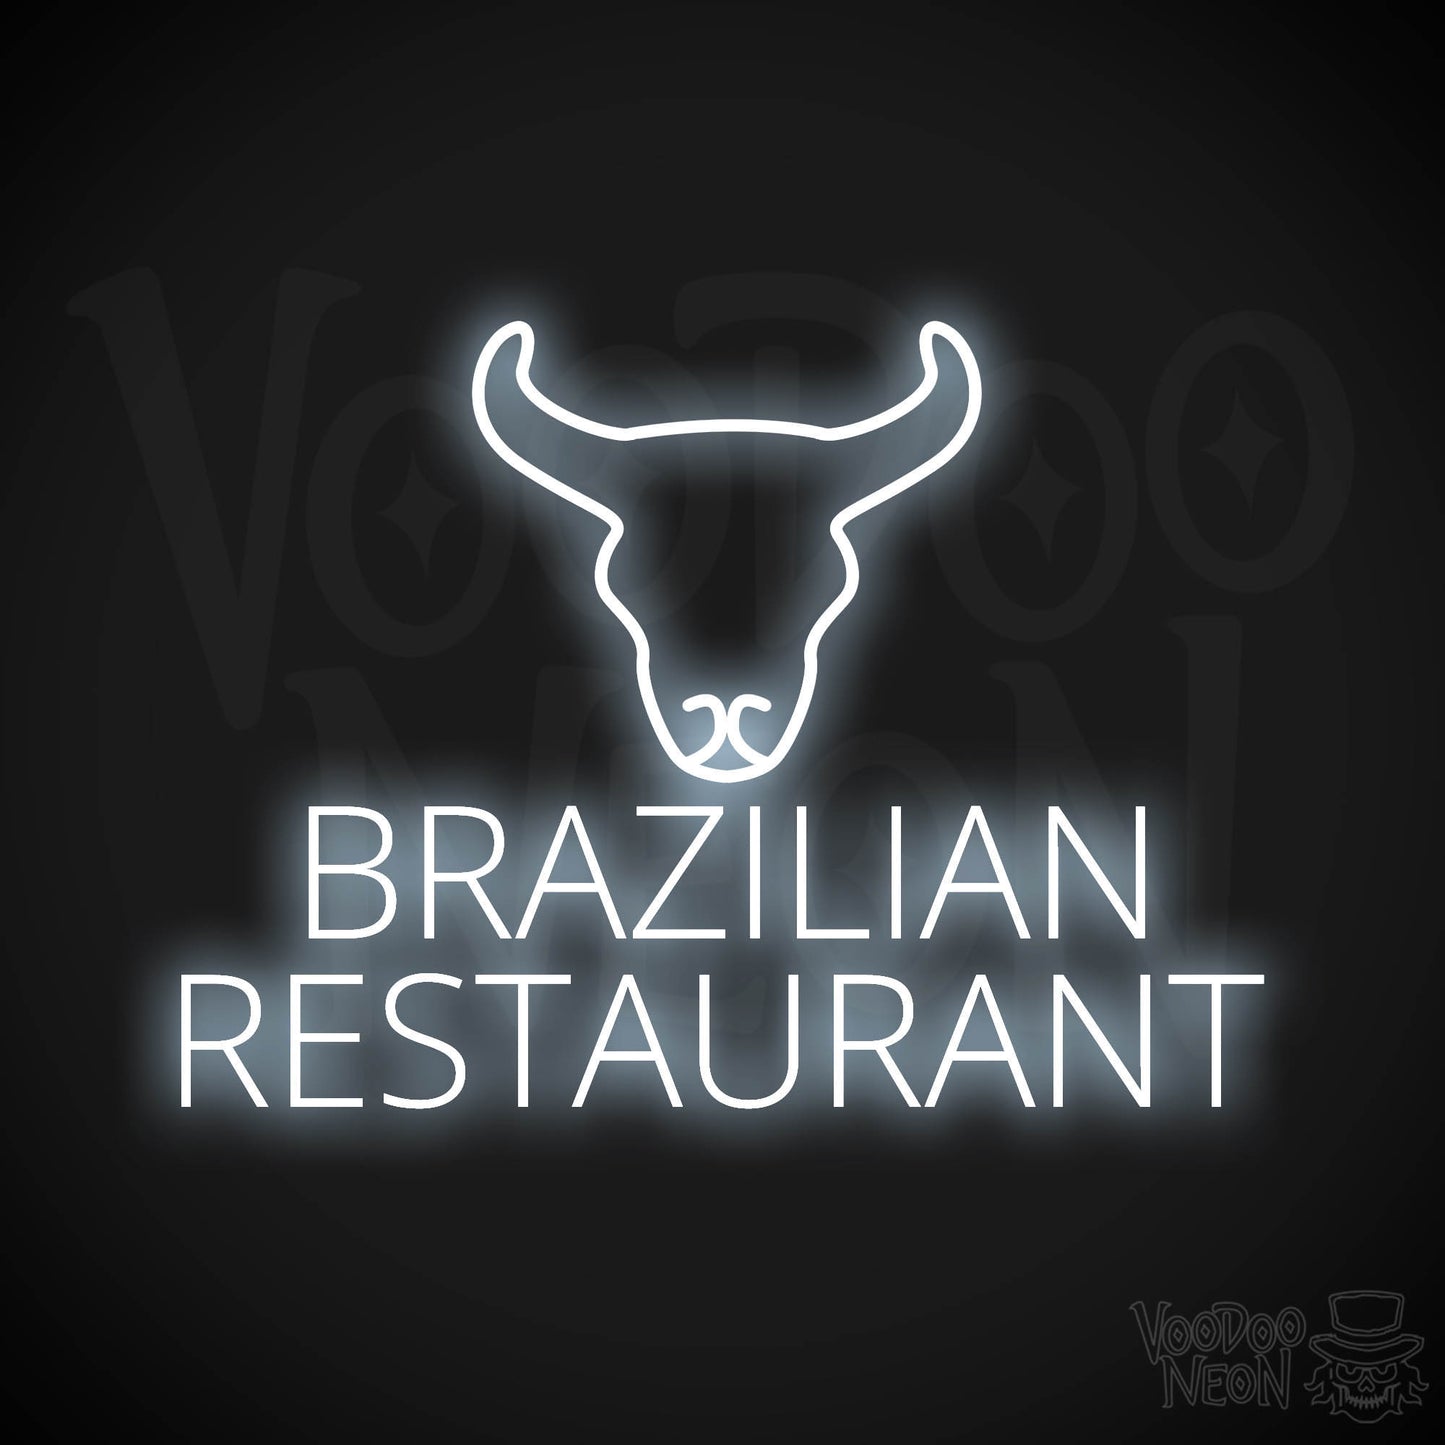 Brazilian Restaurant LED Neon - Cool White